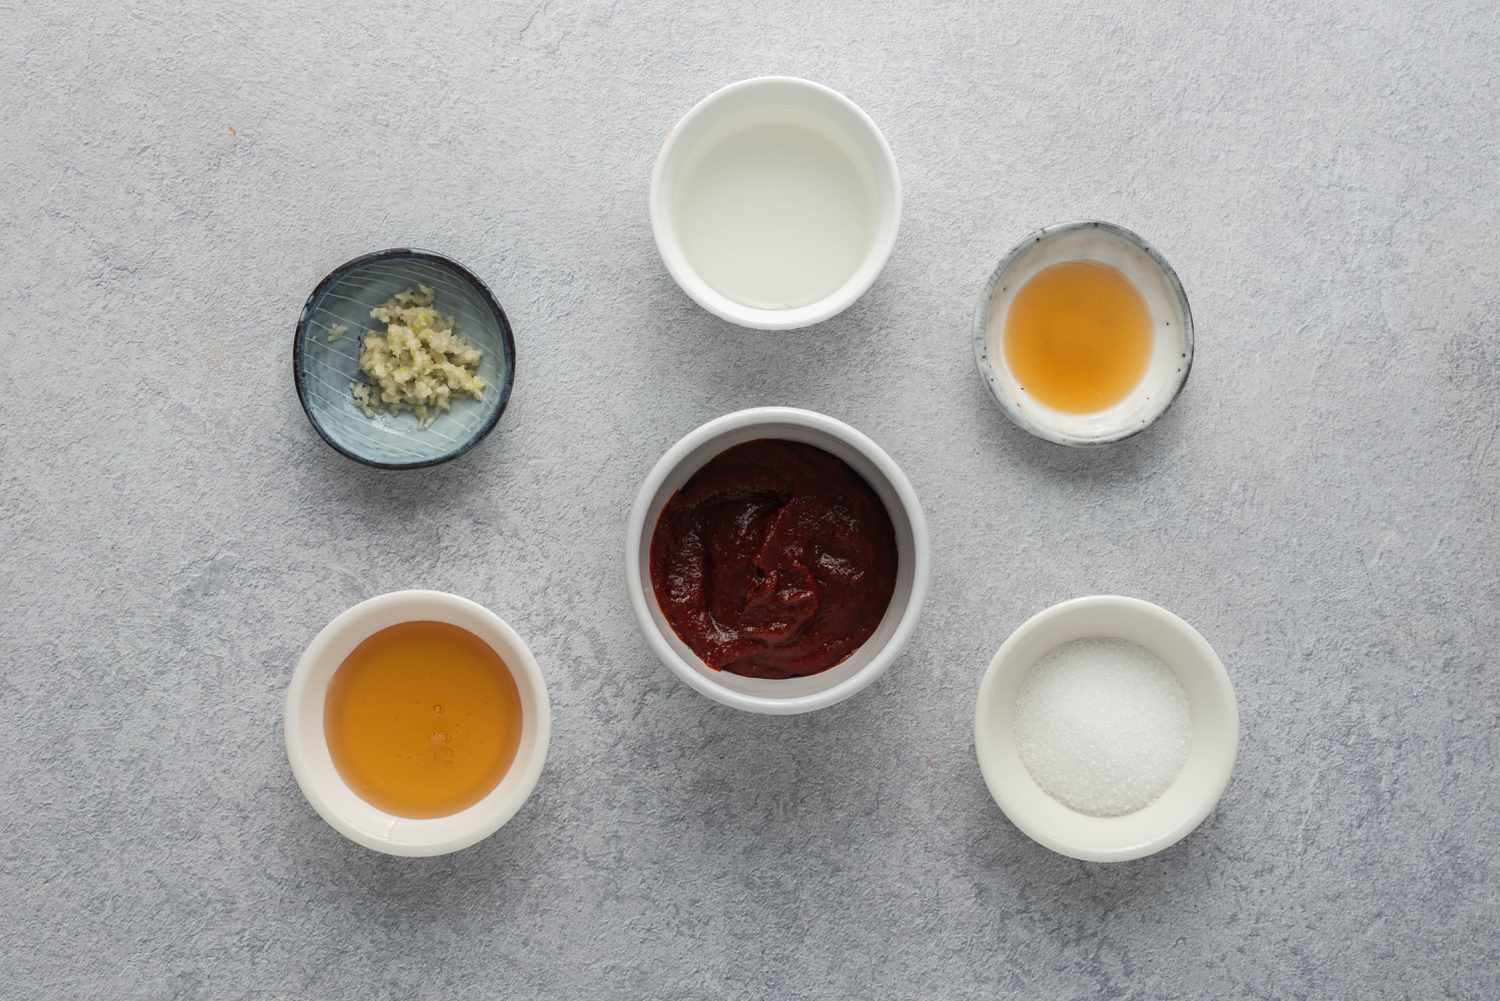 Ingredients for Korean dipping sauce recipe gathered